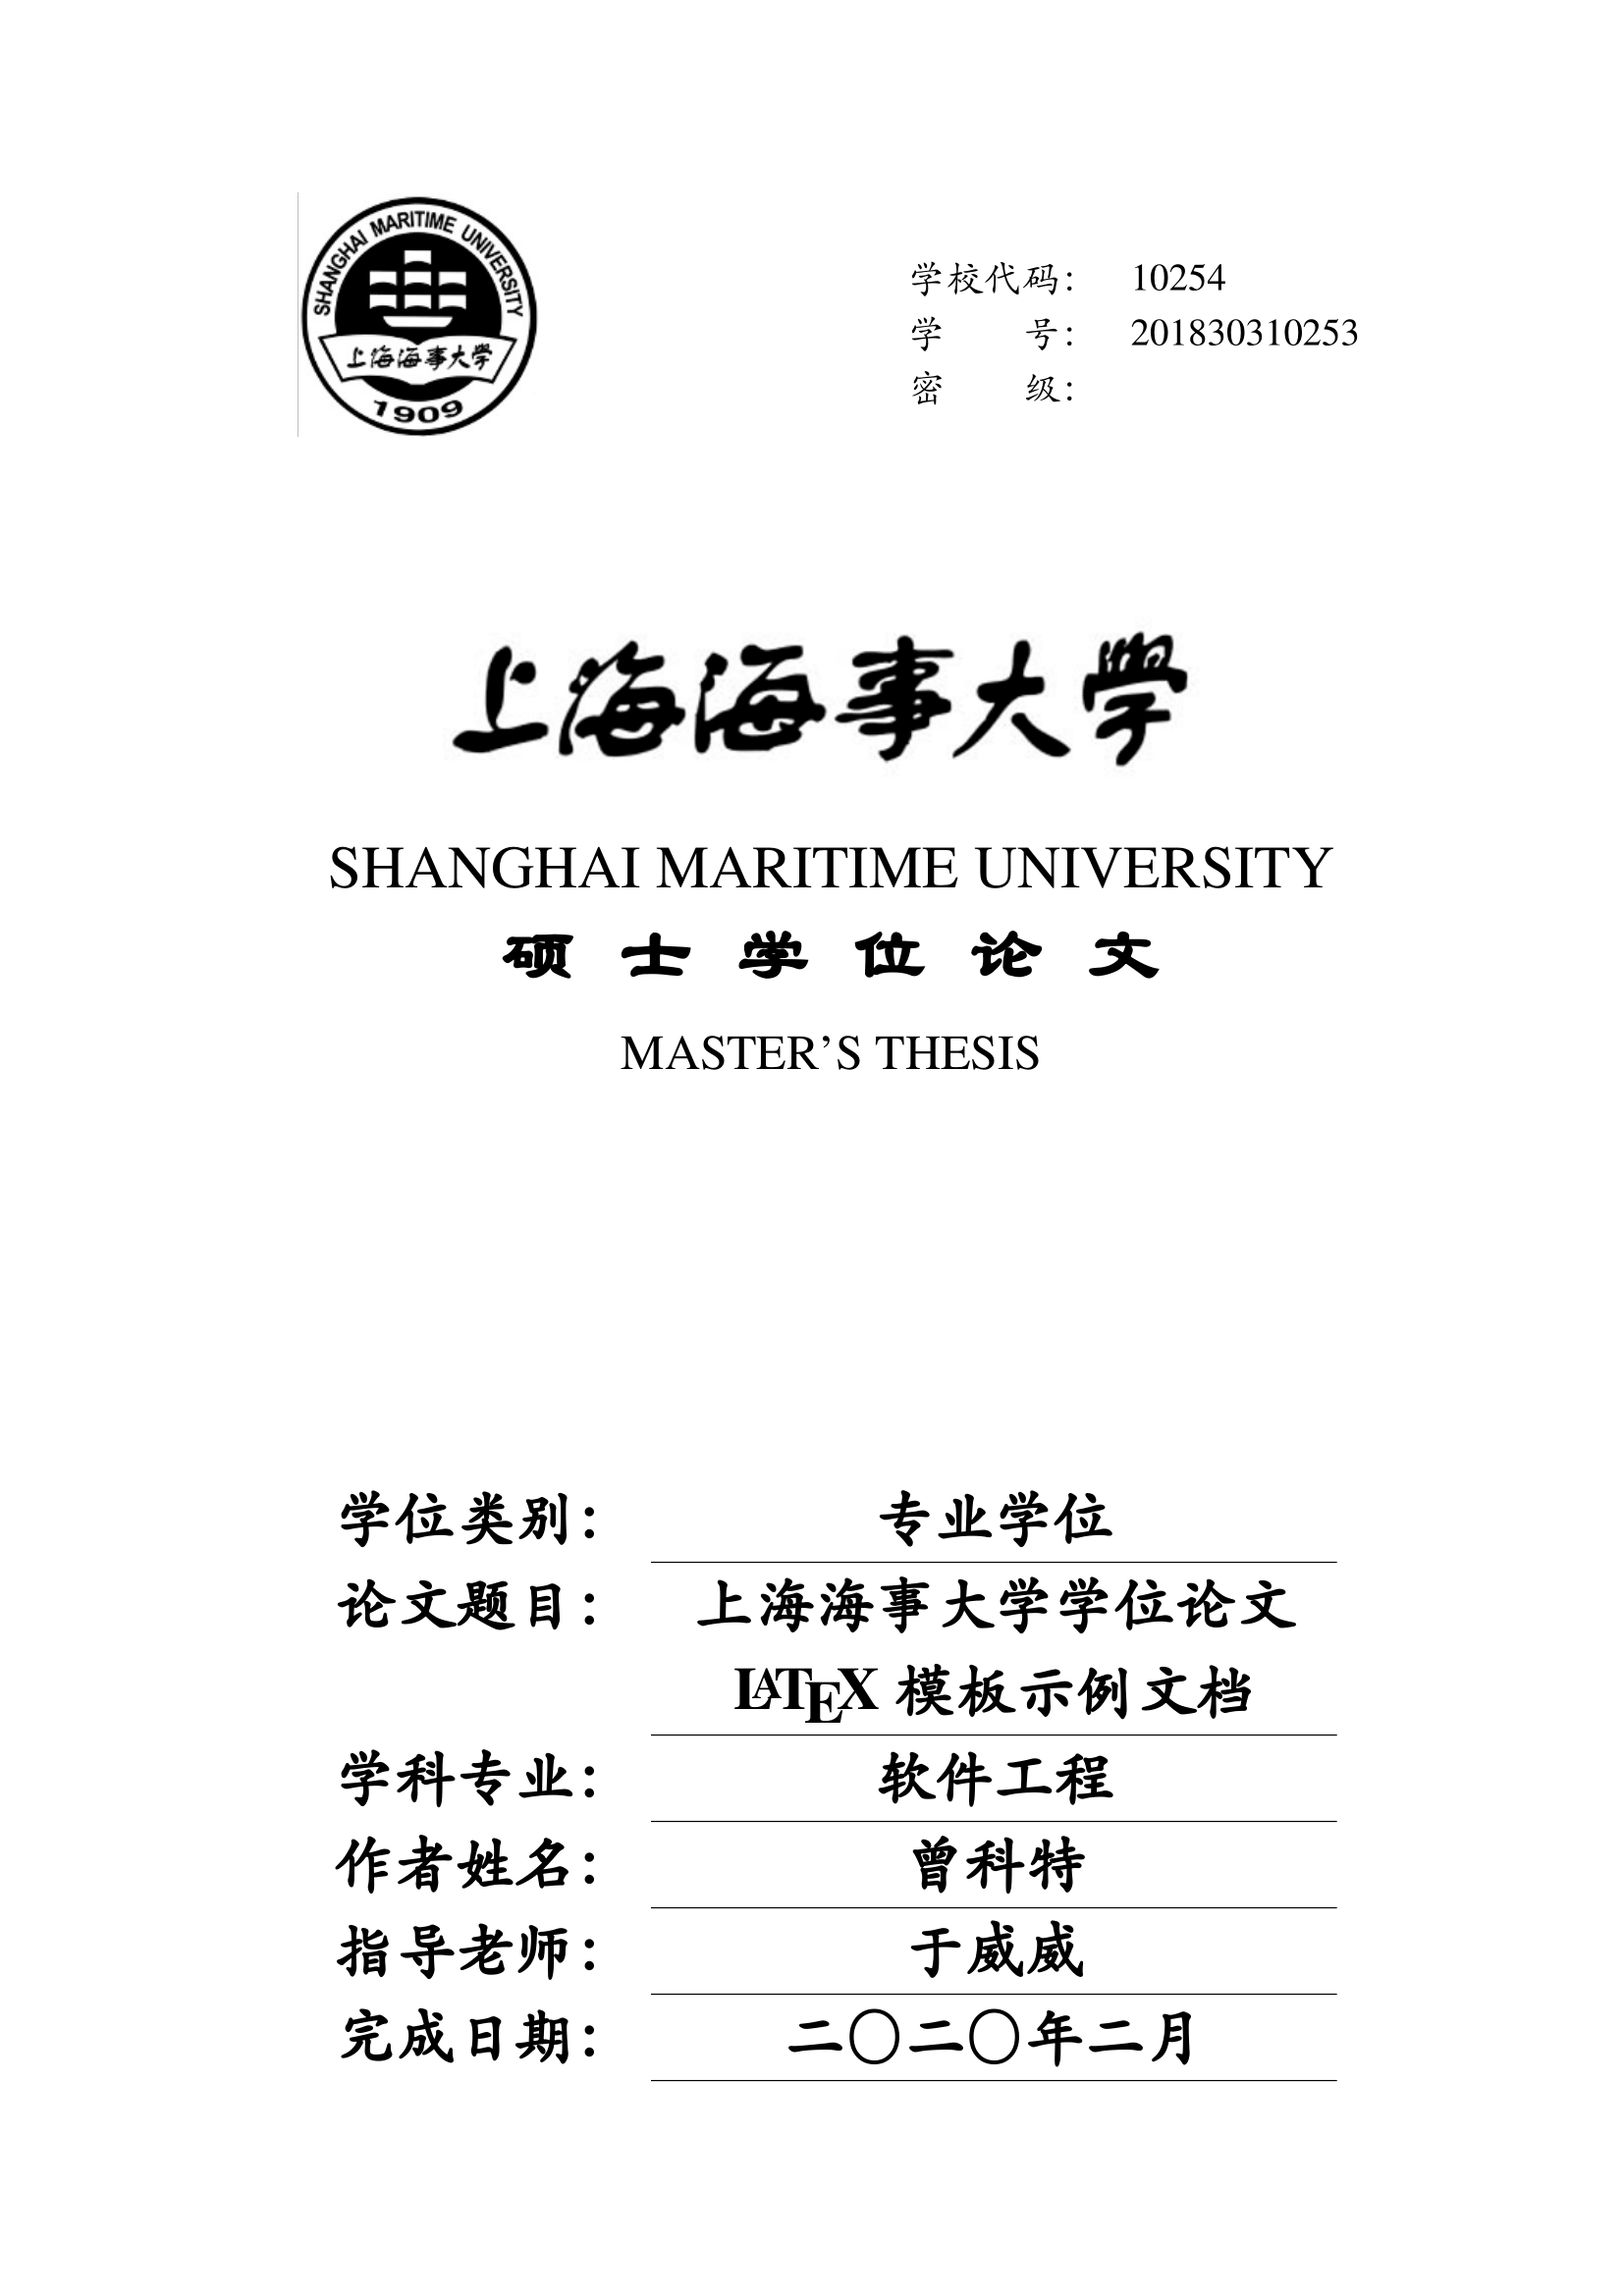 上海海事大学 LaTeX 学位论文模板